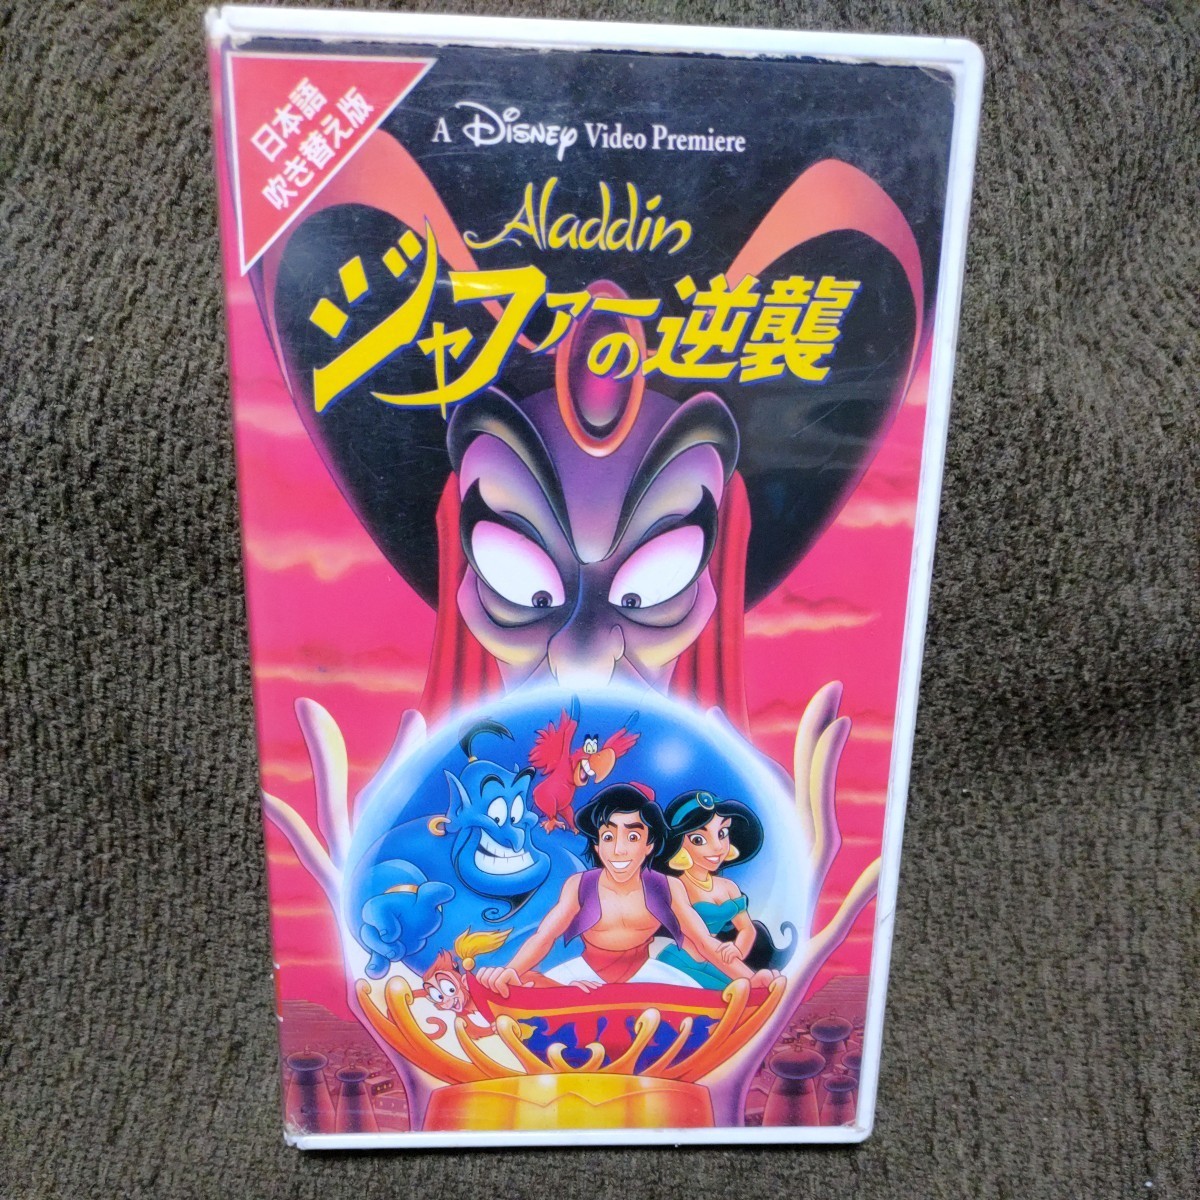  видеолента [ Aladdin ja мех. обратный .] японский язык дубликат * Disney *VHS